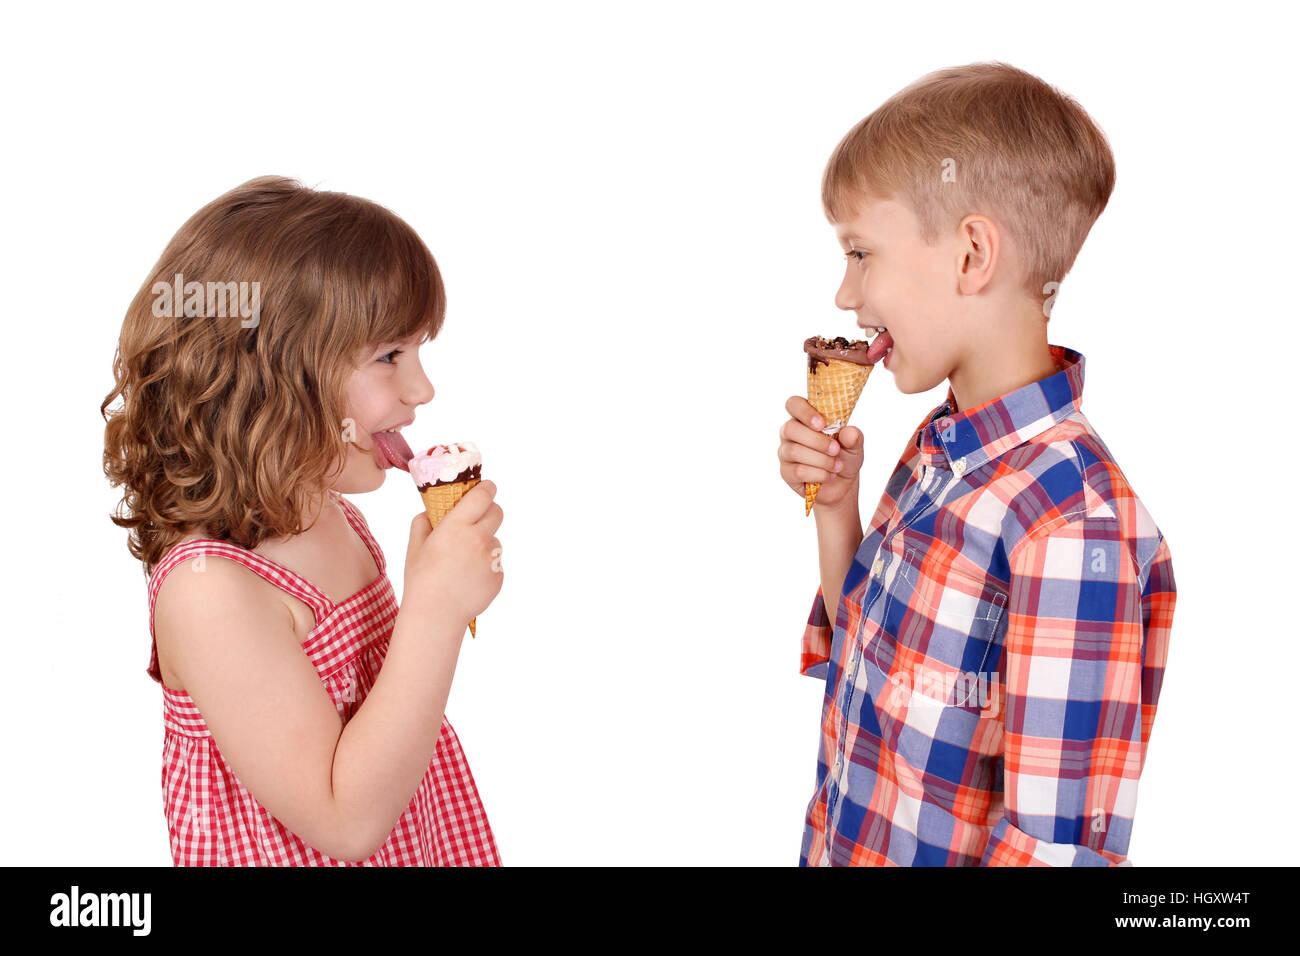 happy children eating ice cream Stock Photo